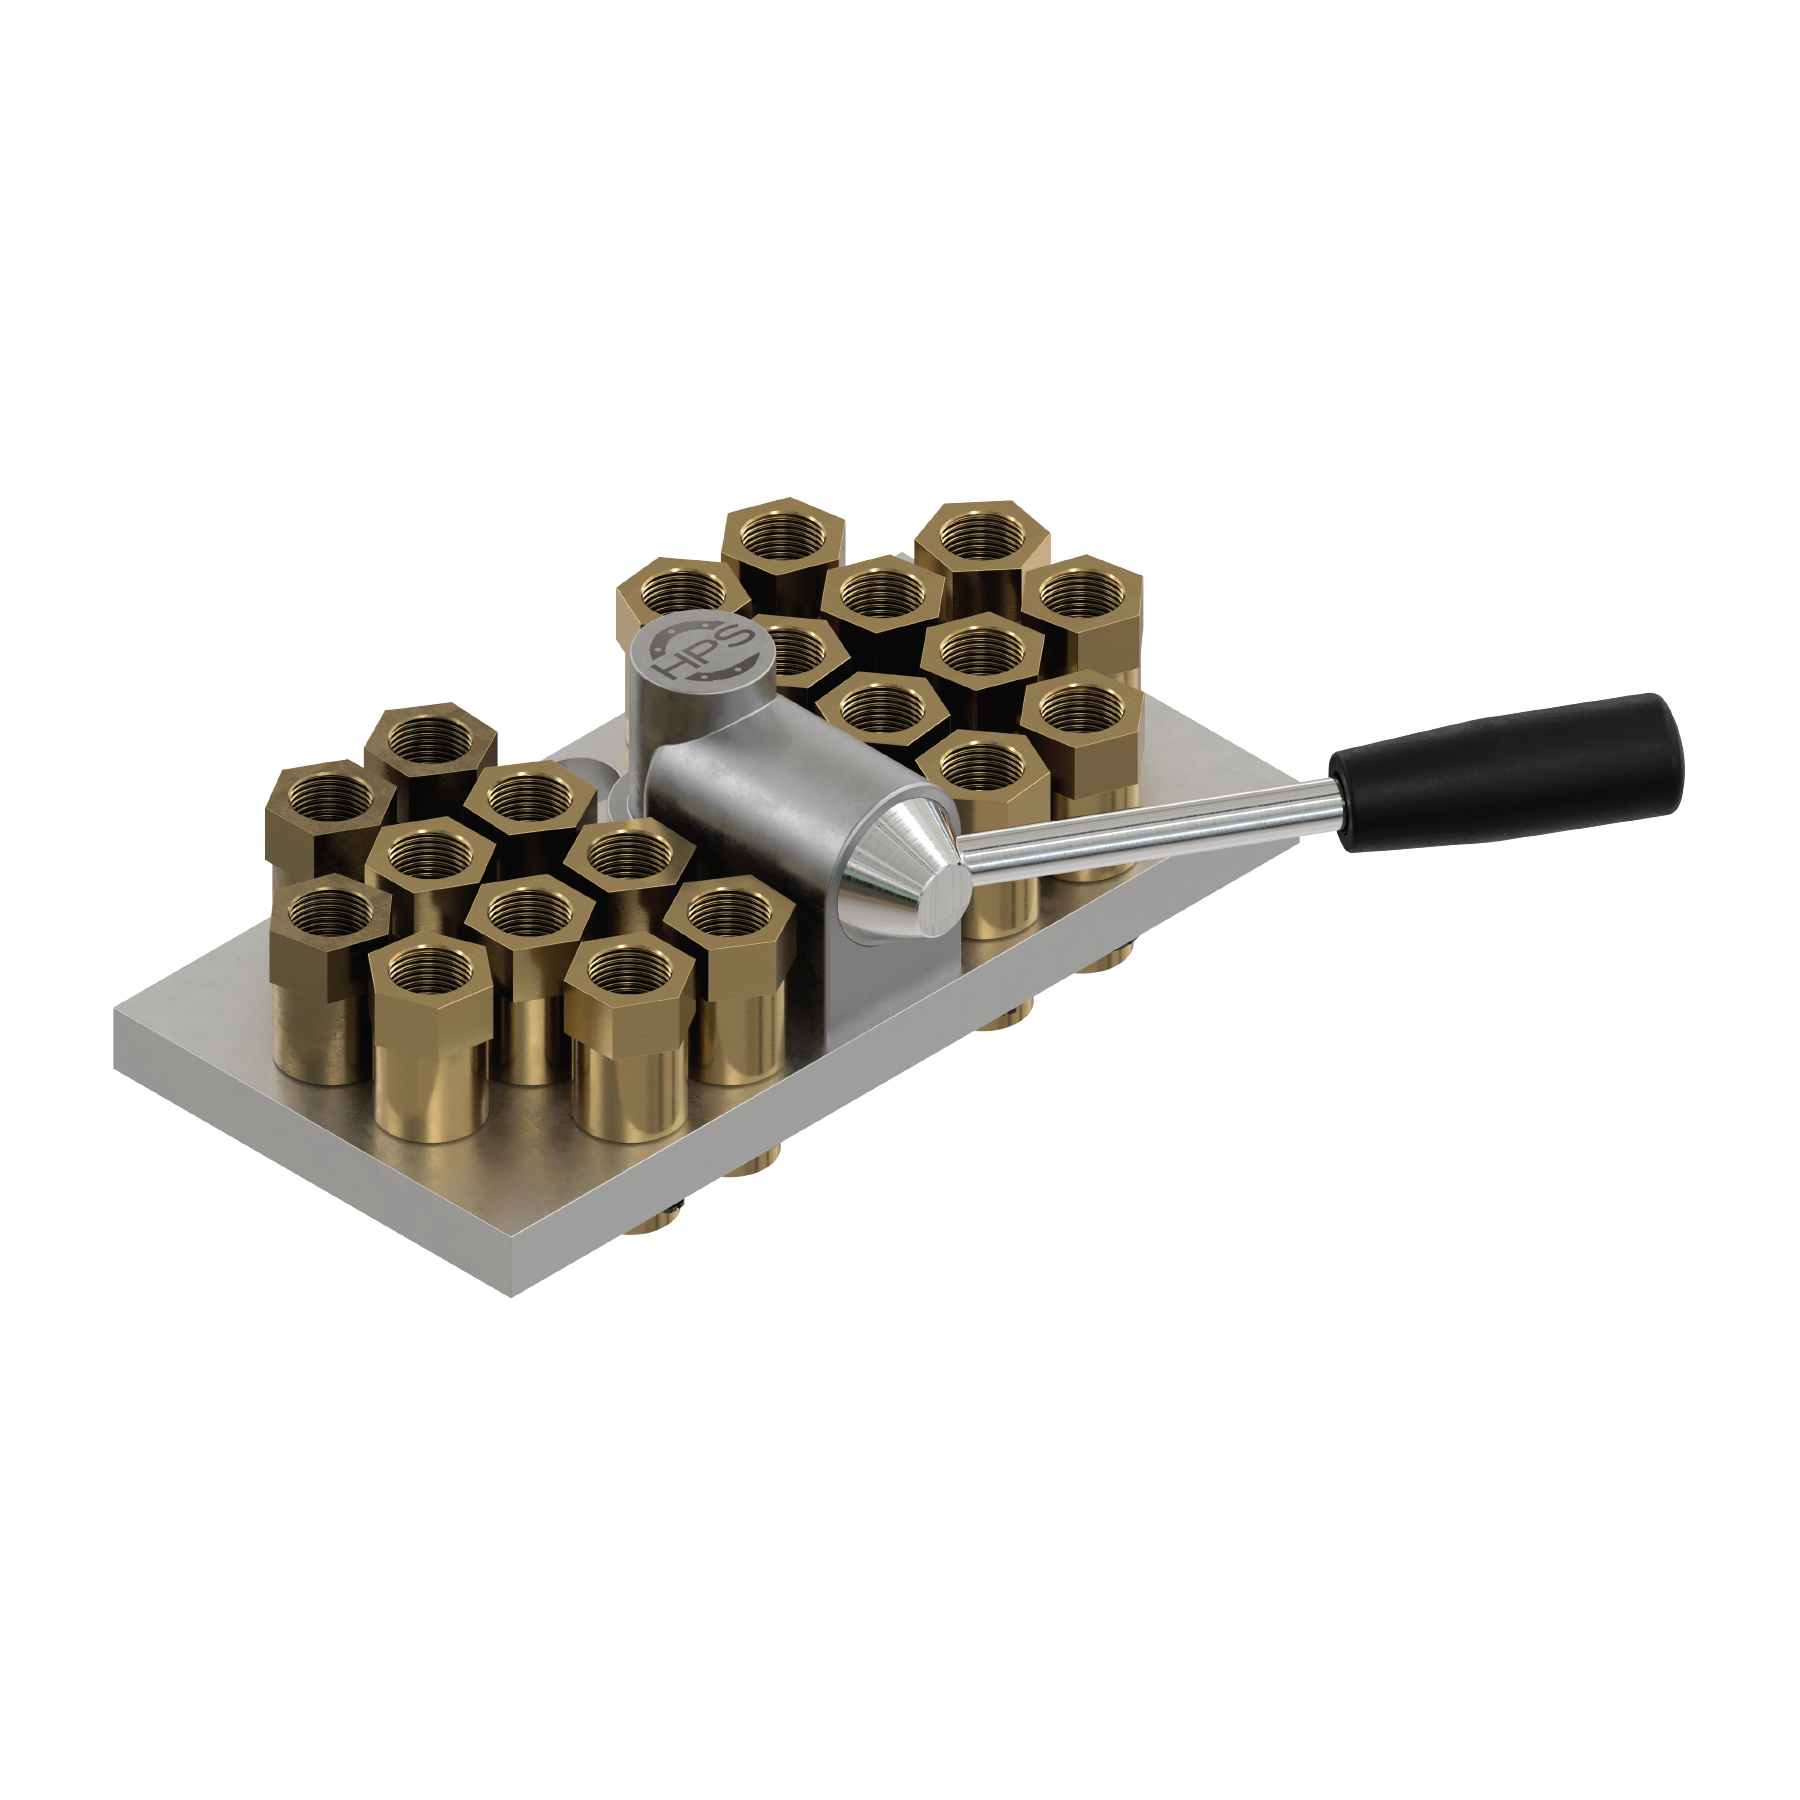 Water multi-couplings – 29 series (20 sockets)